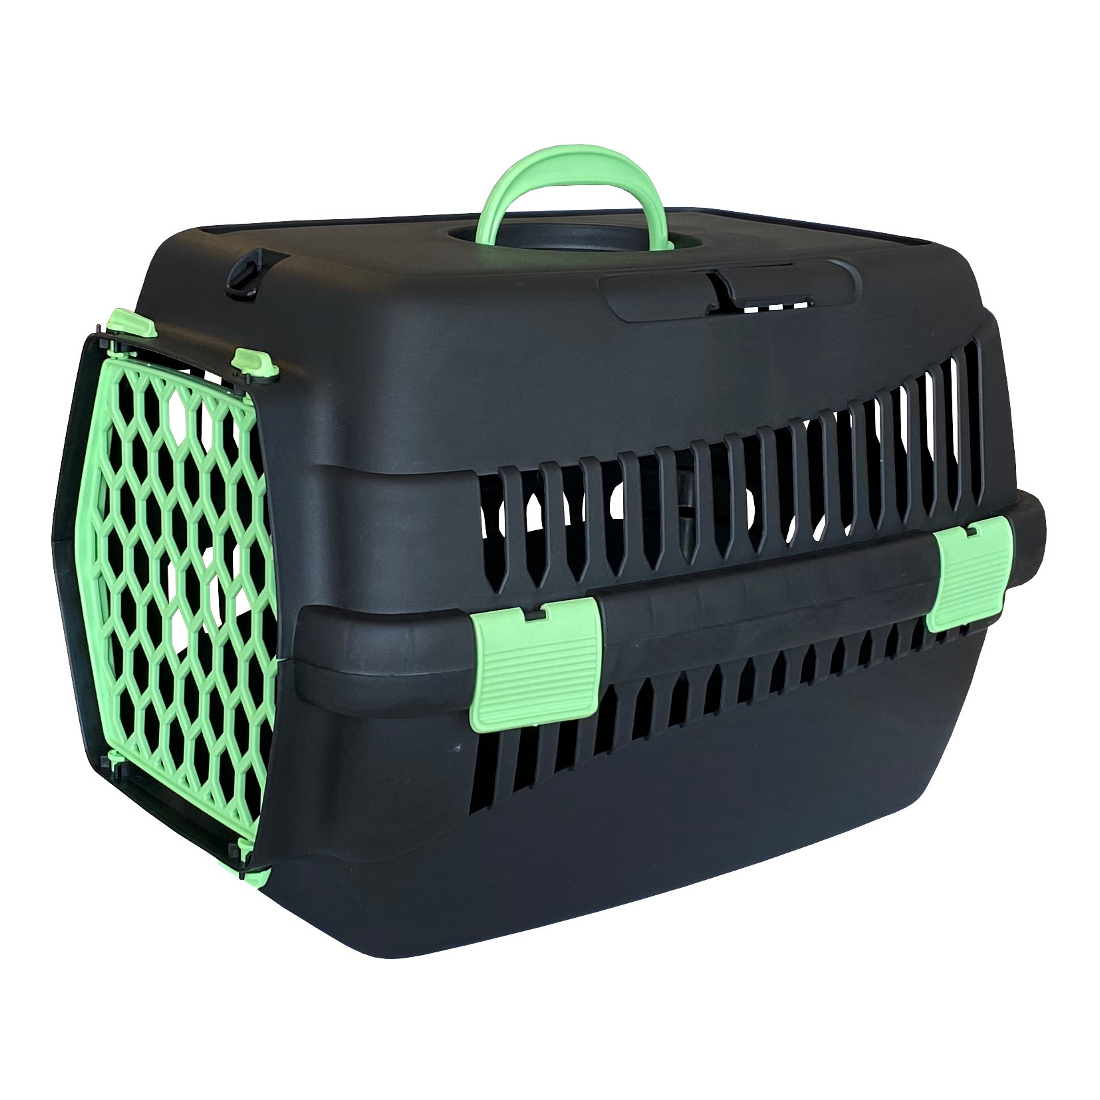 Lüx Kedi Köpek Taşıma Çantası 32 X 48 X 32 cm Siyah-Yeşil